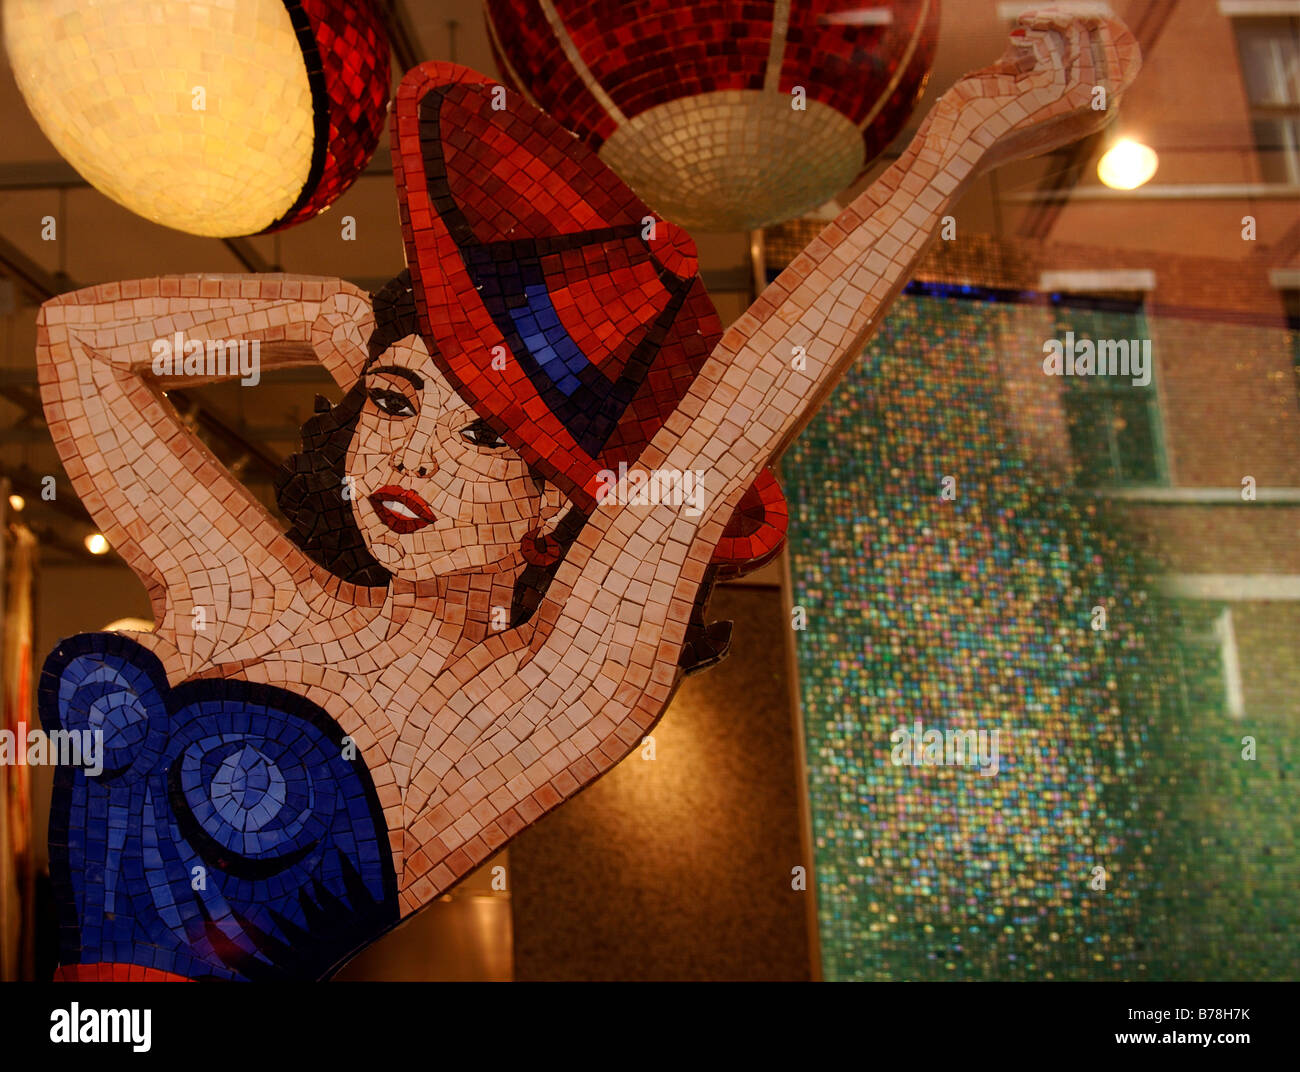 Abbildung einer Frau gemacht der Mosaiksteine in einem Kachel-Shop, New York City, USA Stockfoto